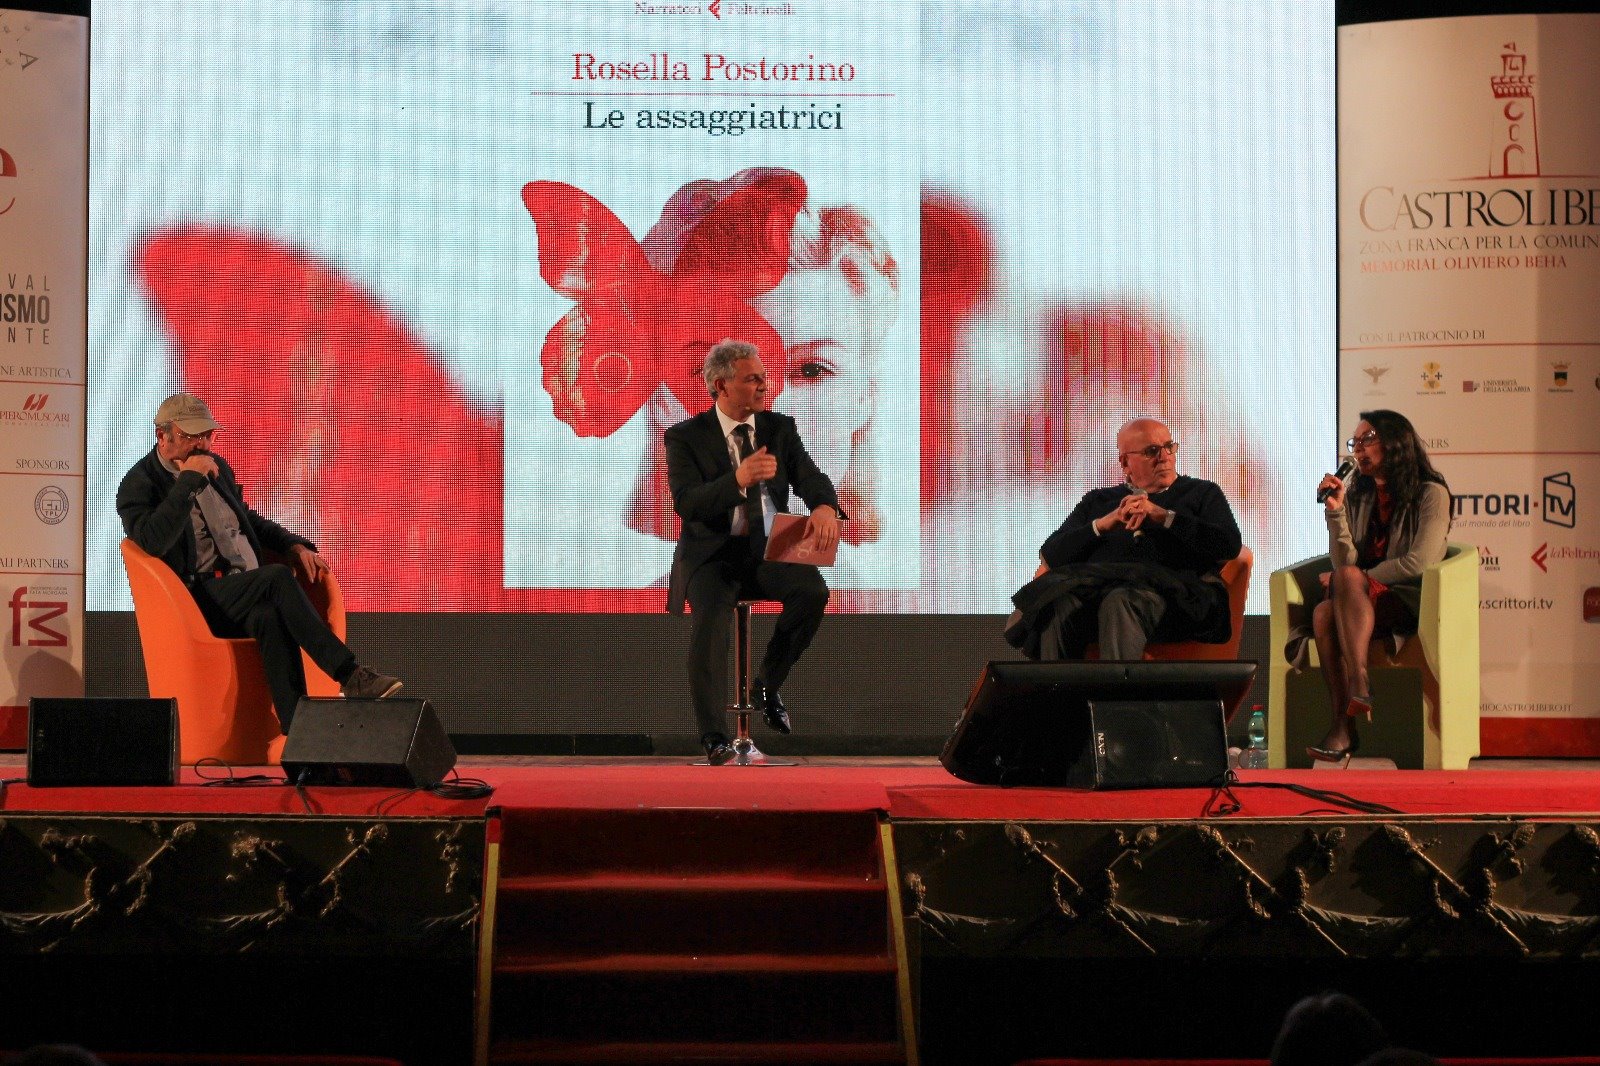 Il talk e la premiazione di Pino Aprile in occasione del Premio Castrolibero – Memorial Oliviero Beha svolto il 13 Aprile 2018 con Piero Muscari, Mario Oliverio e Rosella Postorino.